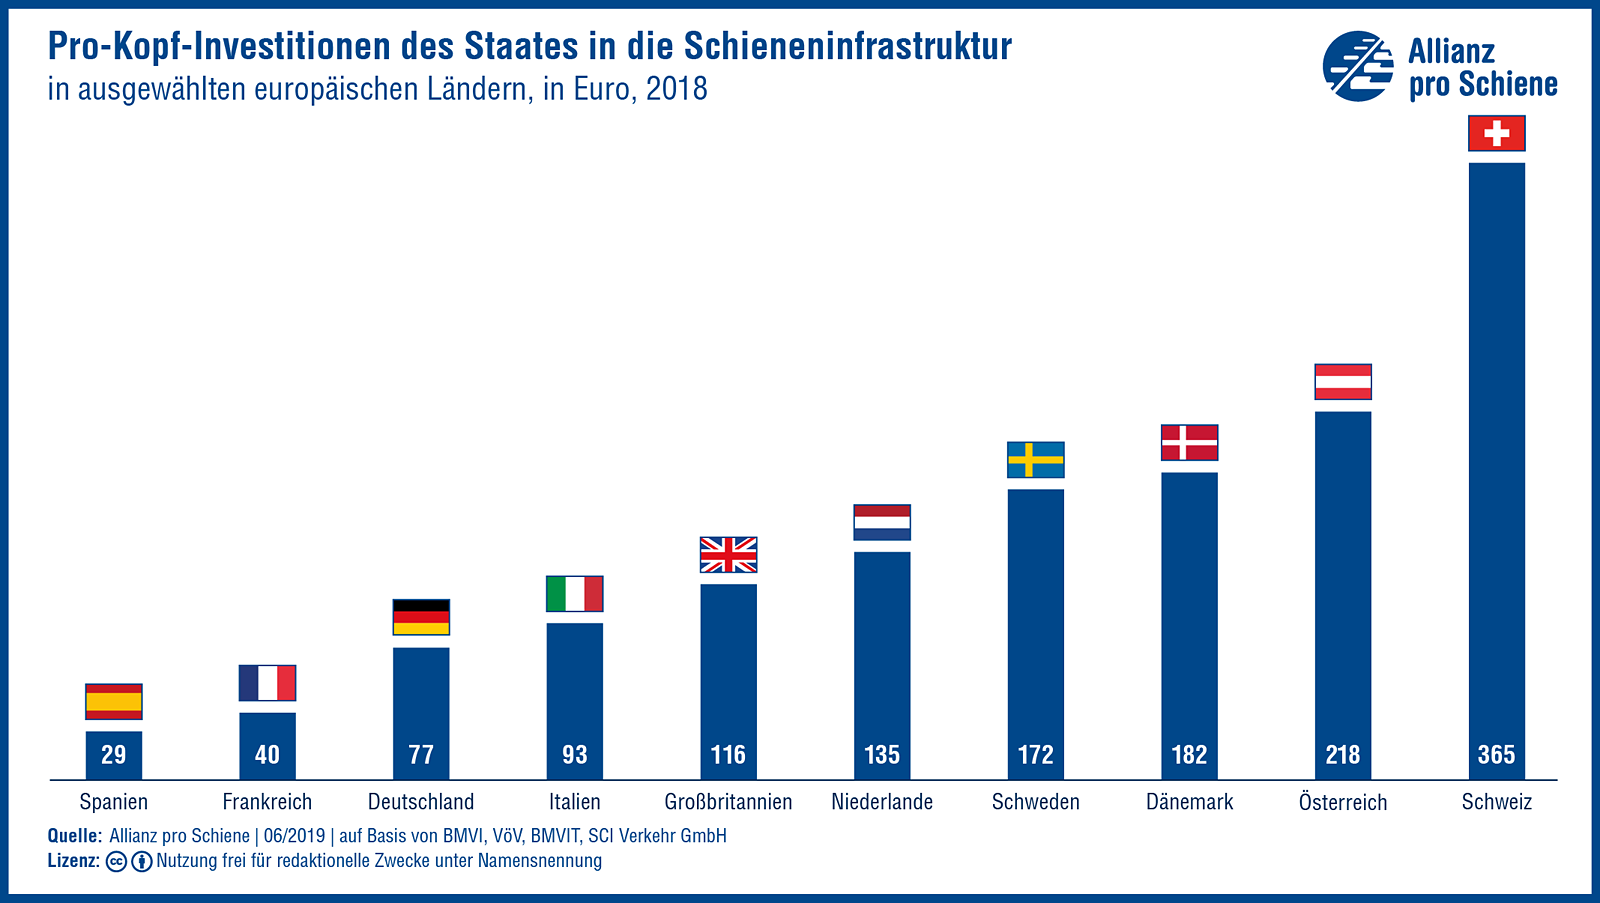 Pro-Kopf-Investitionen des Staates in die Schieneninfrastruktur, in ausgewählten europäischen Ländern, 2018